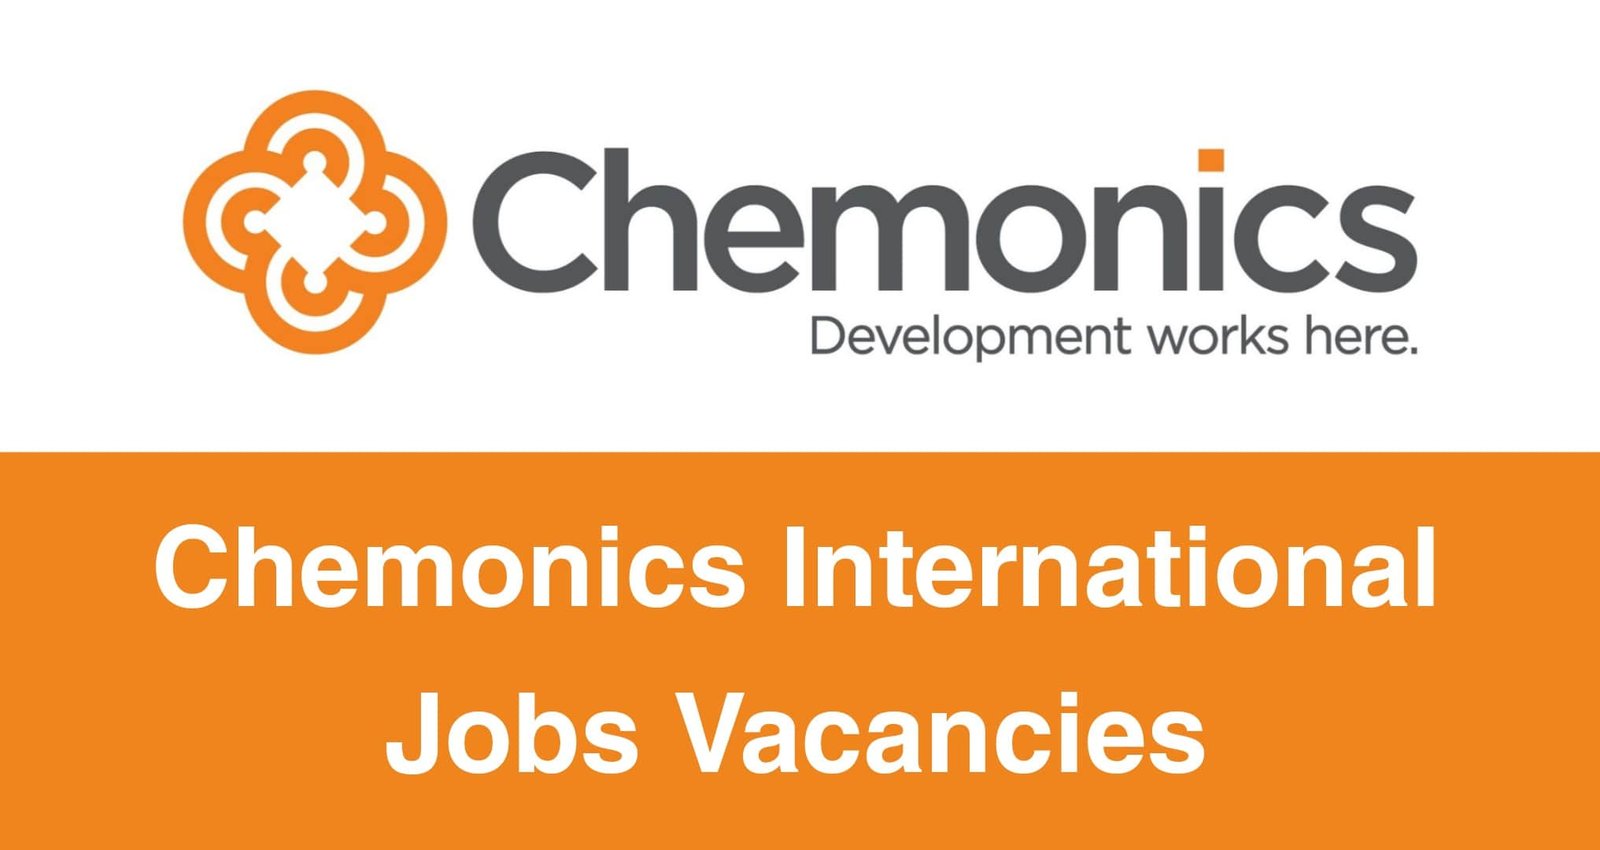 Chemonics International Jobs Vacancies